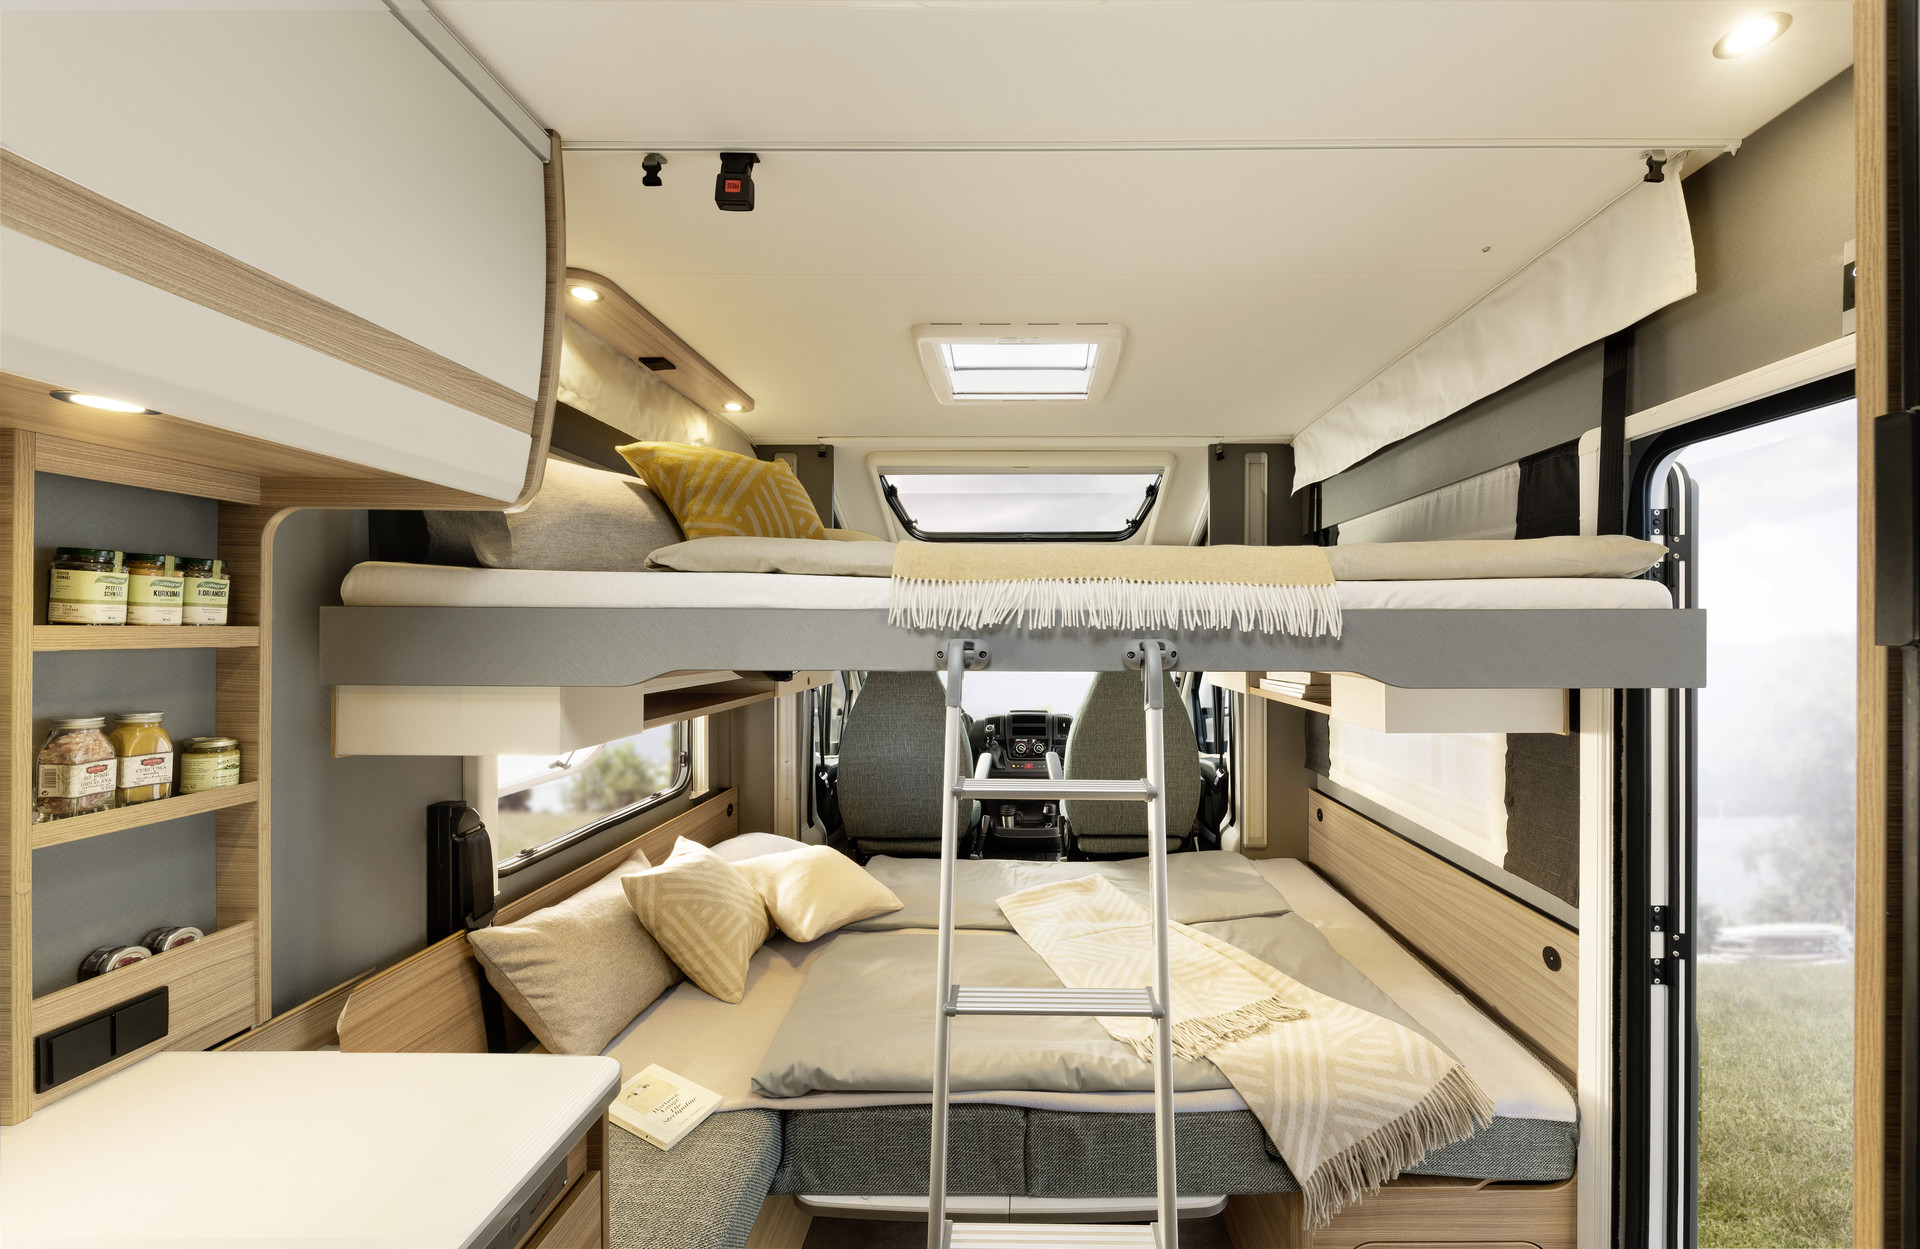 Auch 4 Schlafplätze sind möglich: Hubbett auf Mittelposition fahren und Sitzgruppe zum weiteren Bett umbauen. • T 6762